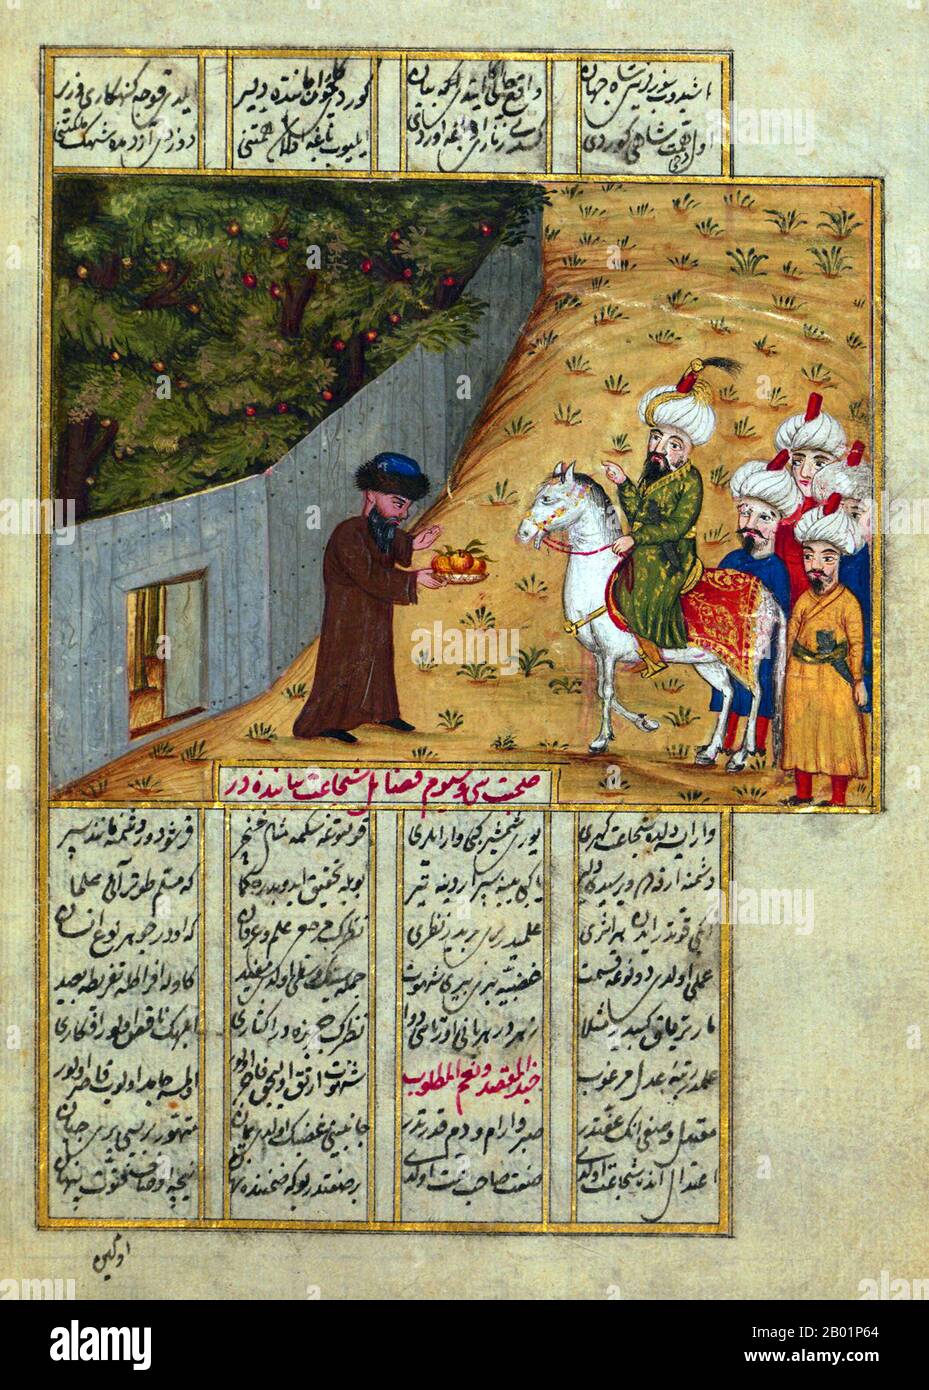 Irak/Türkei: Der abbasidische Kalif al-Ma'mūn und seine Soldaten werden von einem Mann mit Obst begrüßt. Aus der Khamsa von Nev'îzâde Atâyî (1583-1635), 1721. Abū Jaʿfar Abdullāh al-Māʾmūn ibn Harūn (13. September 786 bis 9. August 833), auch Almamon, Al-Maymun und el-Mâmoûn, war ein abbasidischer Kalif, der von 813 bis zu seinem Tod 833 regierte. Stockfoto